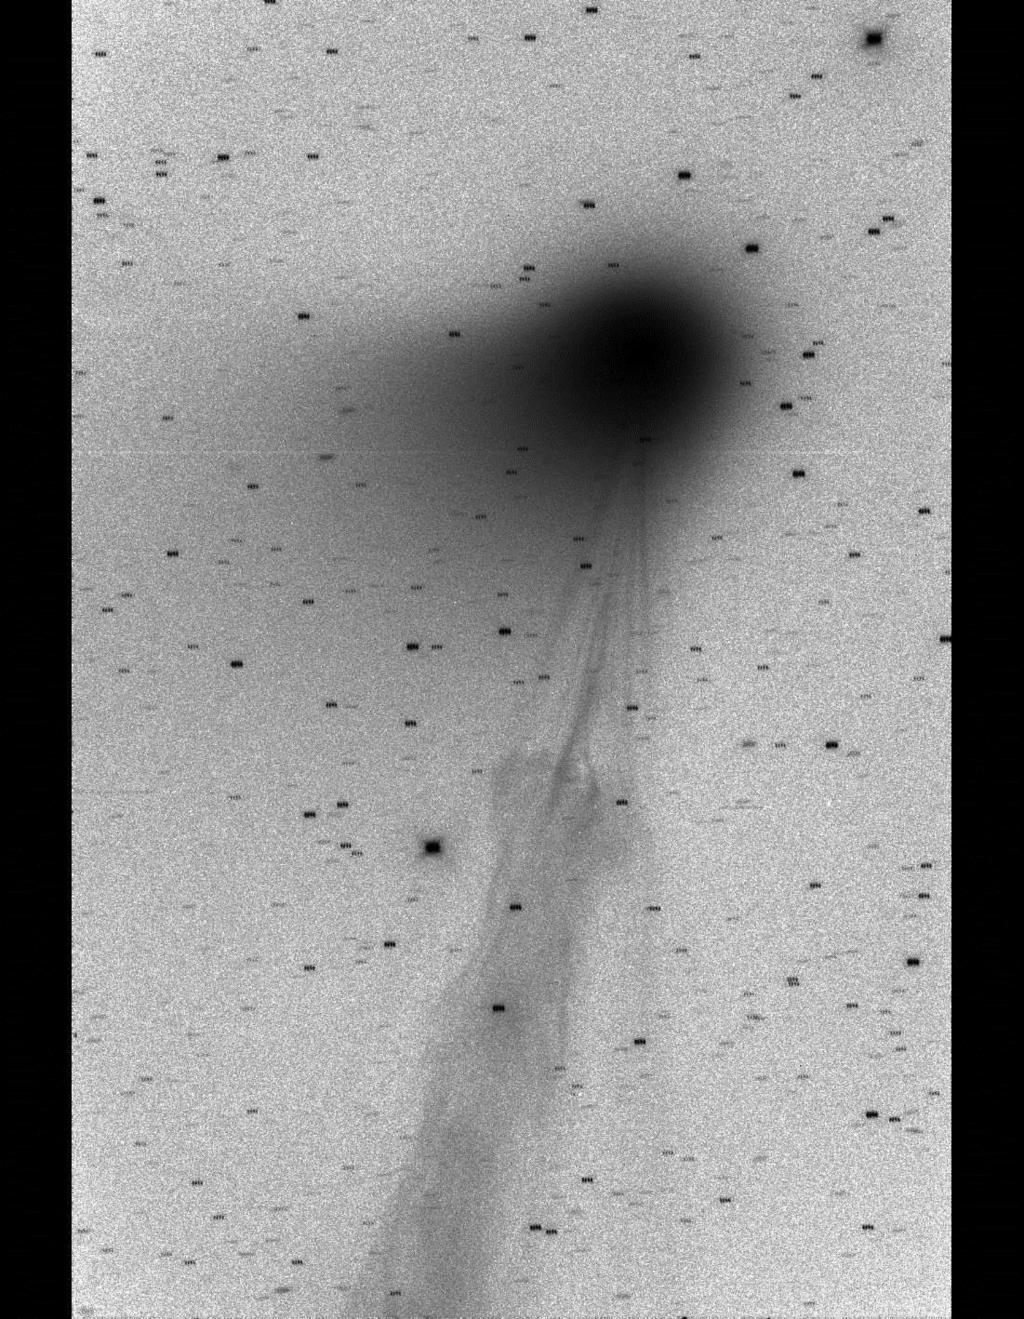 Komet Lemmon: Schweifabriss 15.05.2013 P.